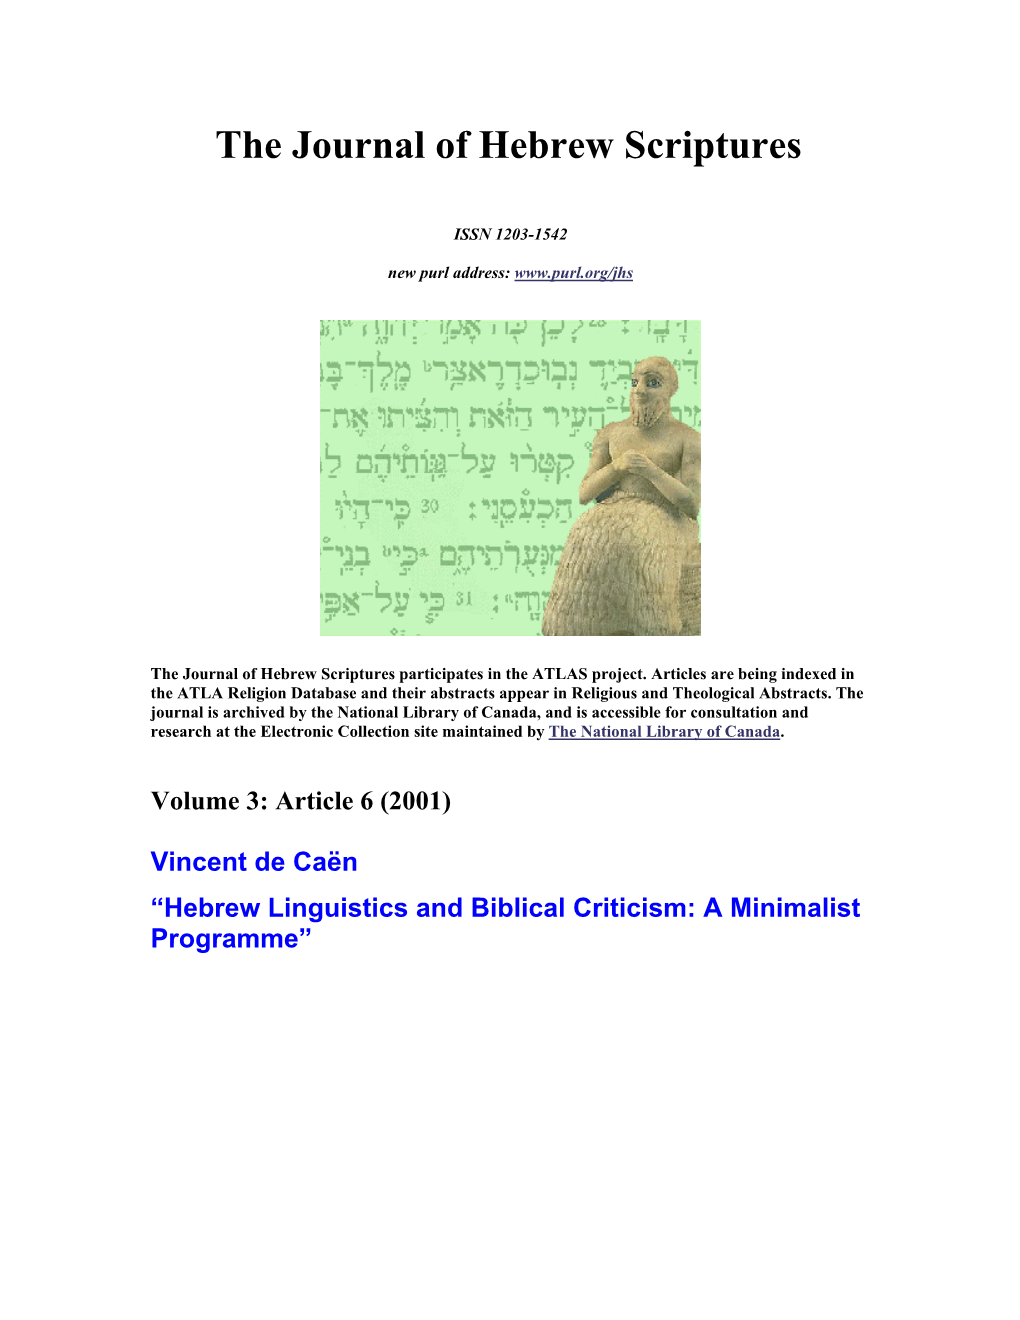 Hebrew Linguistics and Biblical Criticism: a Minimalist Programme”